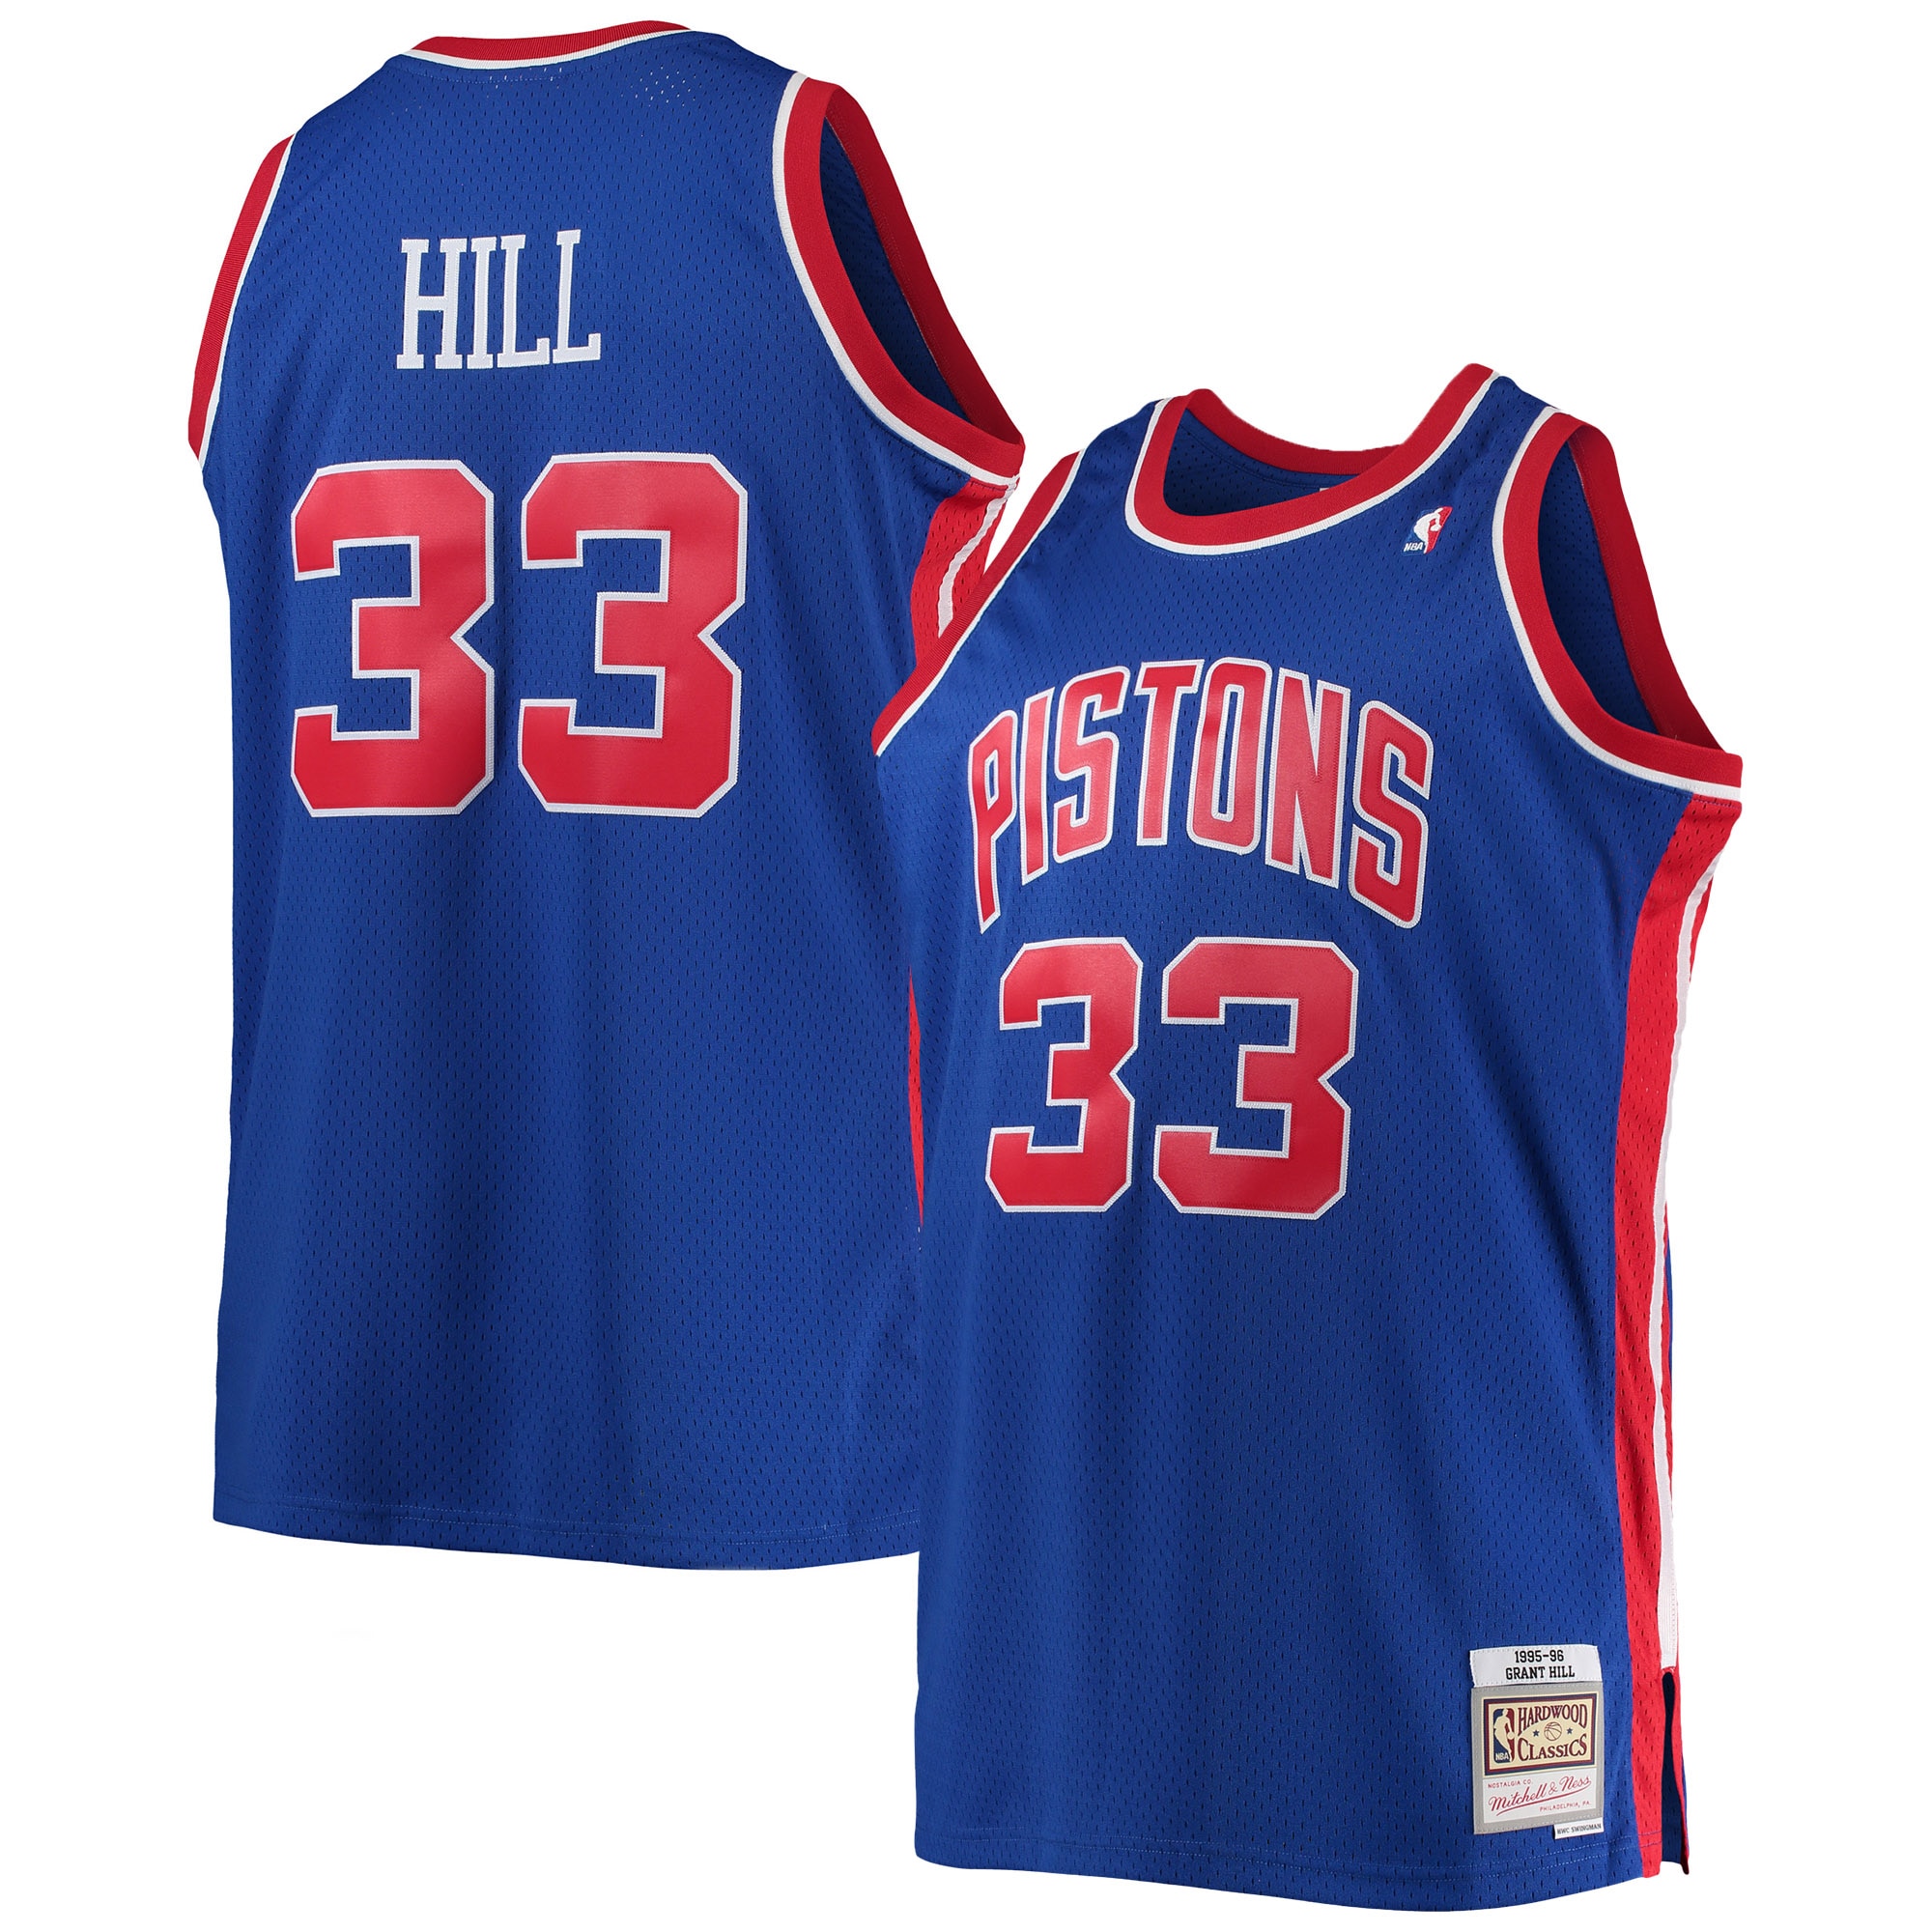 Hill B.J. replica jersey